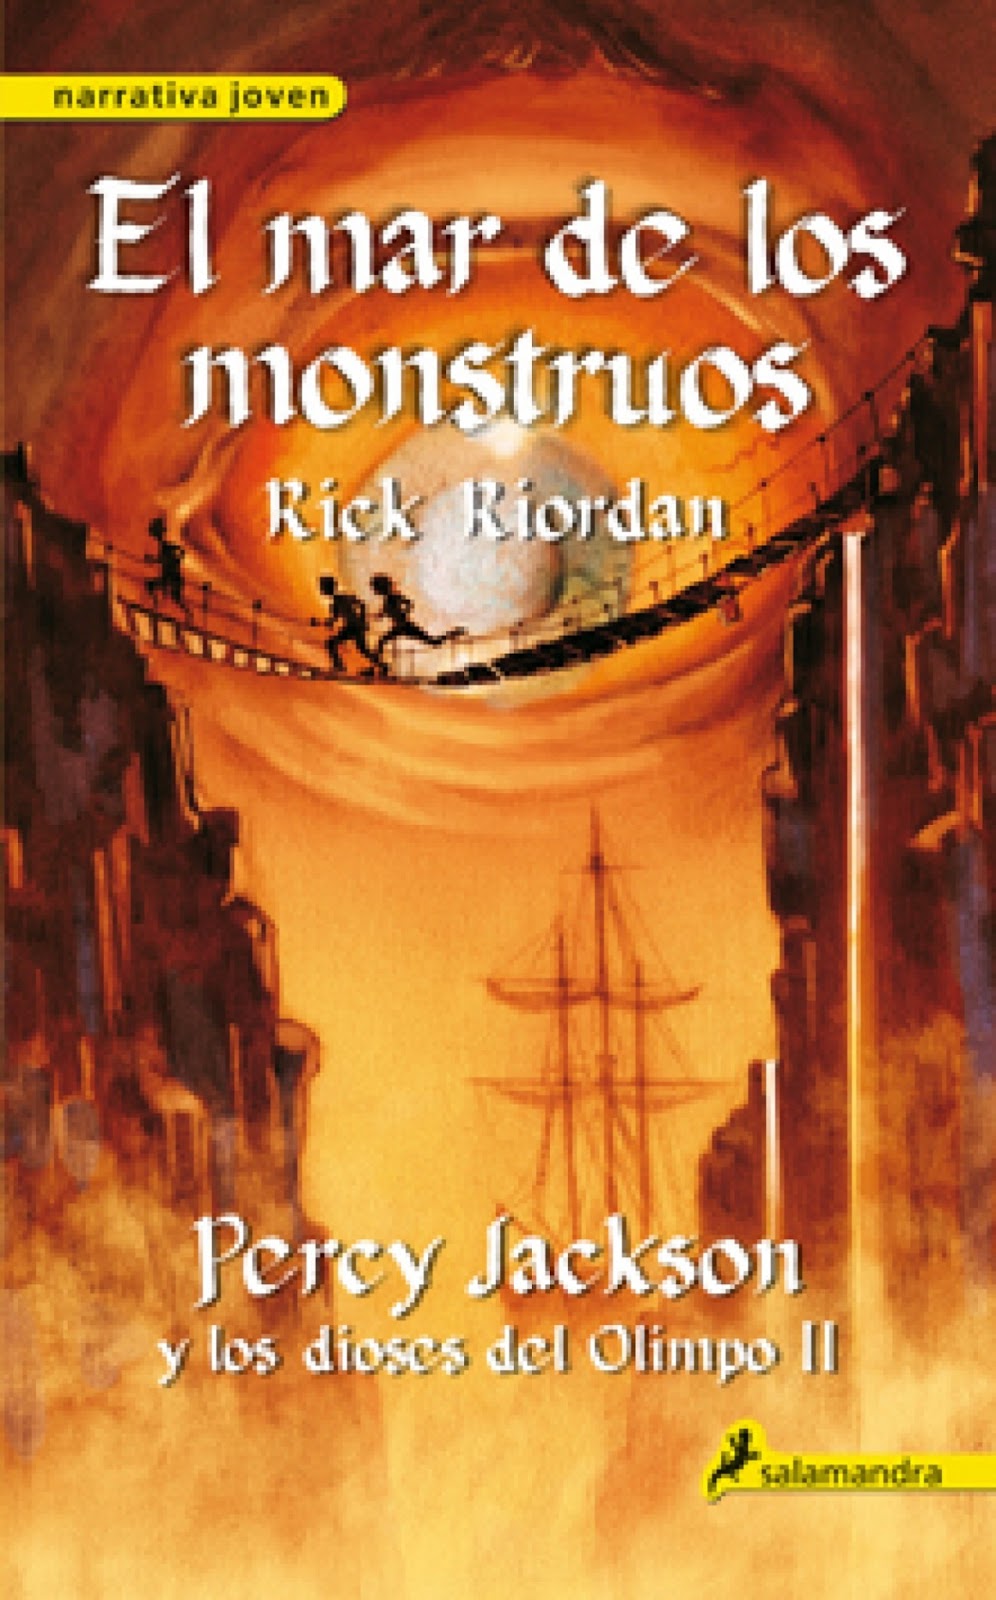 Descargar Libro Percy Jackson y el mar de los monstruos - Libros - Percy Jackson Y El Mar De Los Monstruos